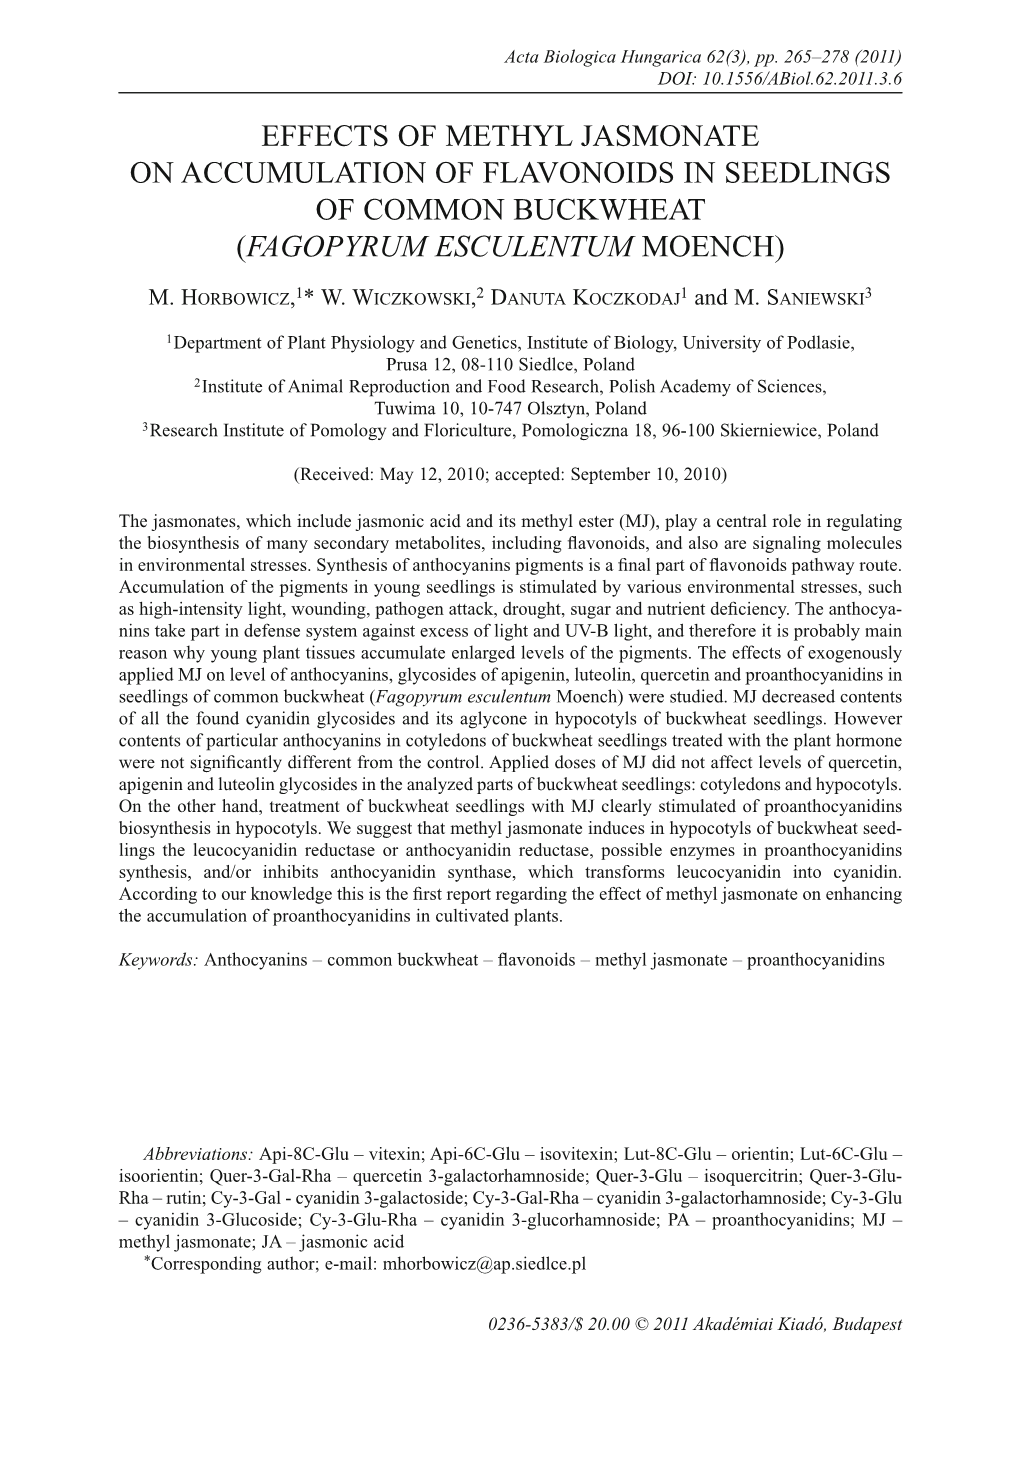 Effects of Methyl Jasmonate on Accumulation of Flavonoids in Seedlings of Common Buckwheat (Fagopyrum Esculentum Moench)